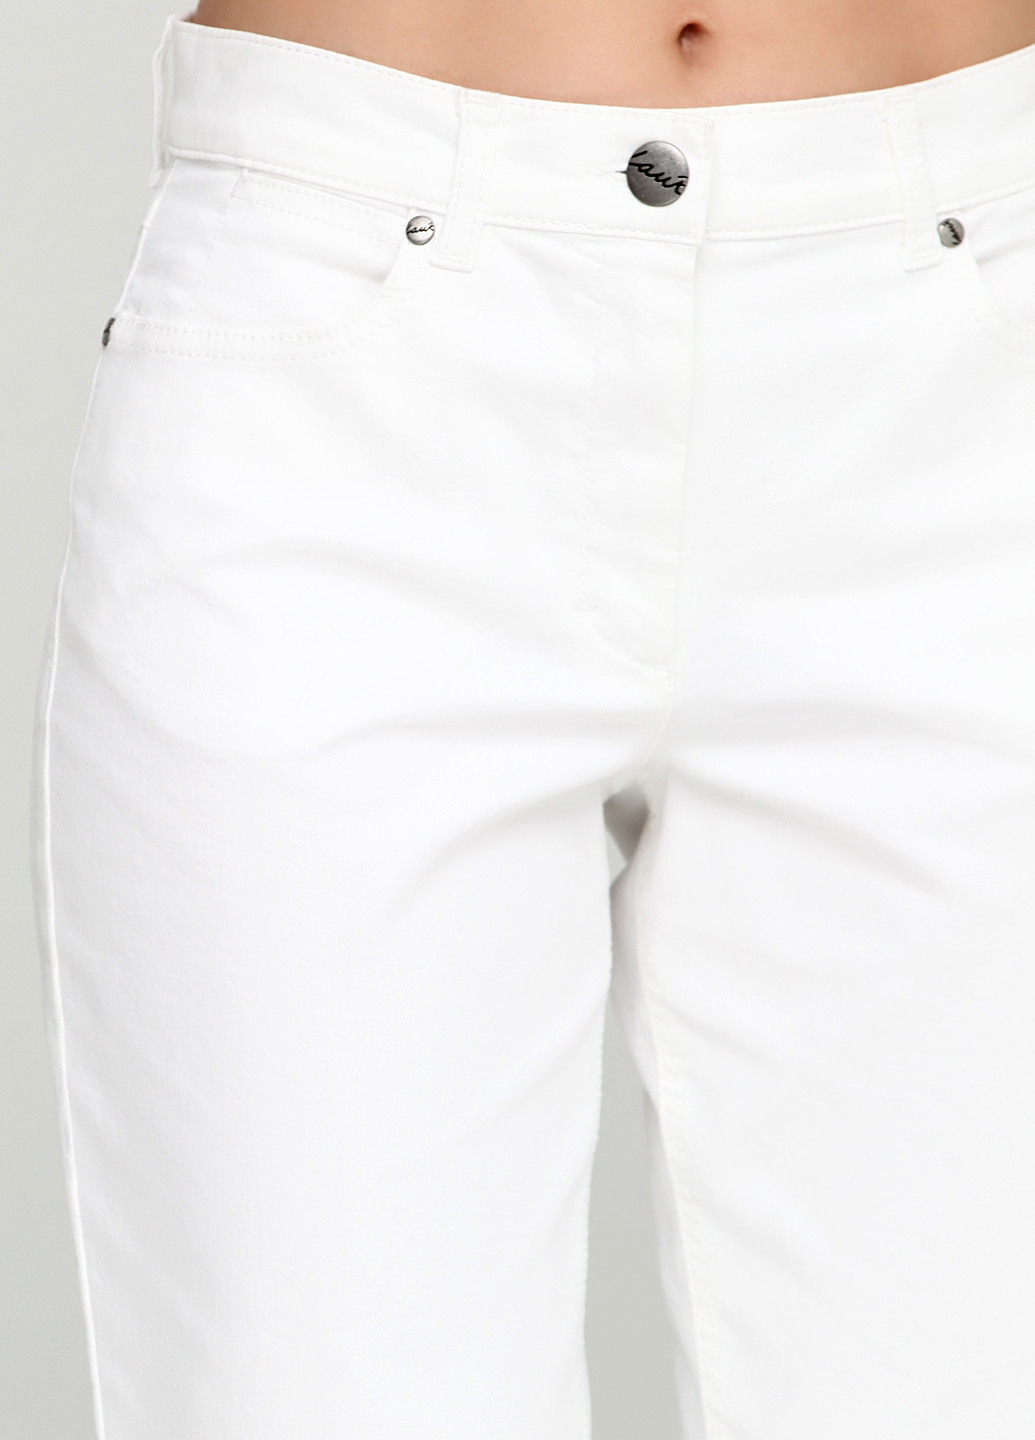 Бриджи Laurie однотонные белые джинсовые